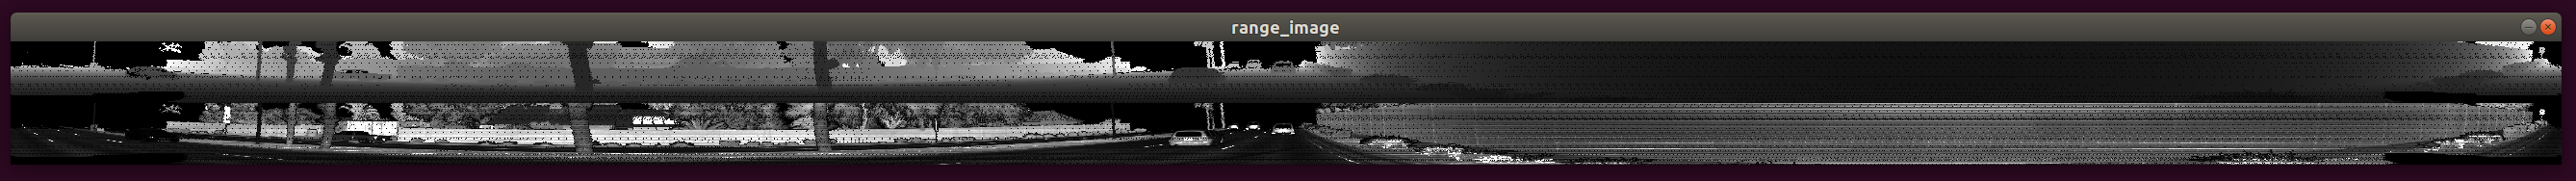 IMAGES/range_image_2.png